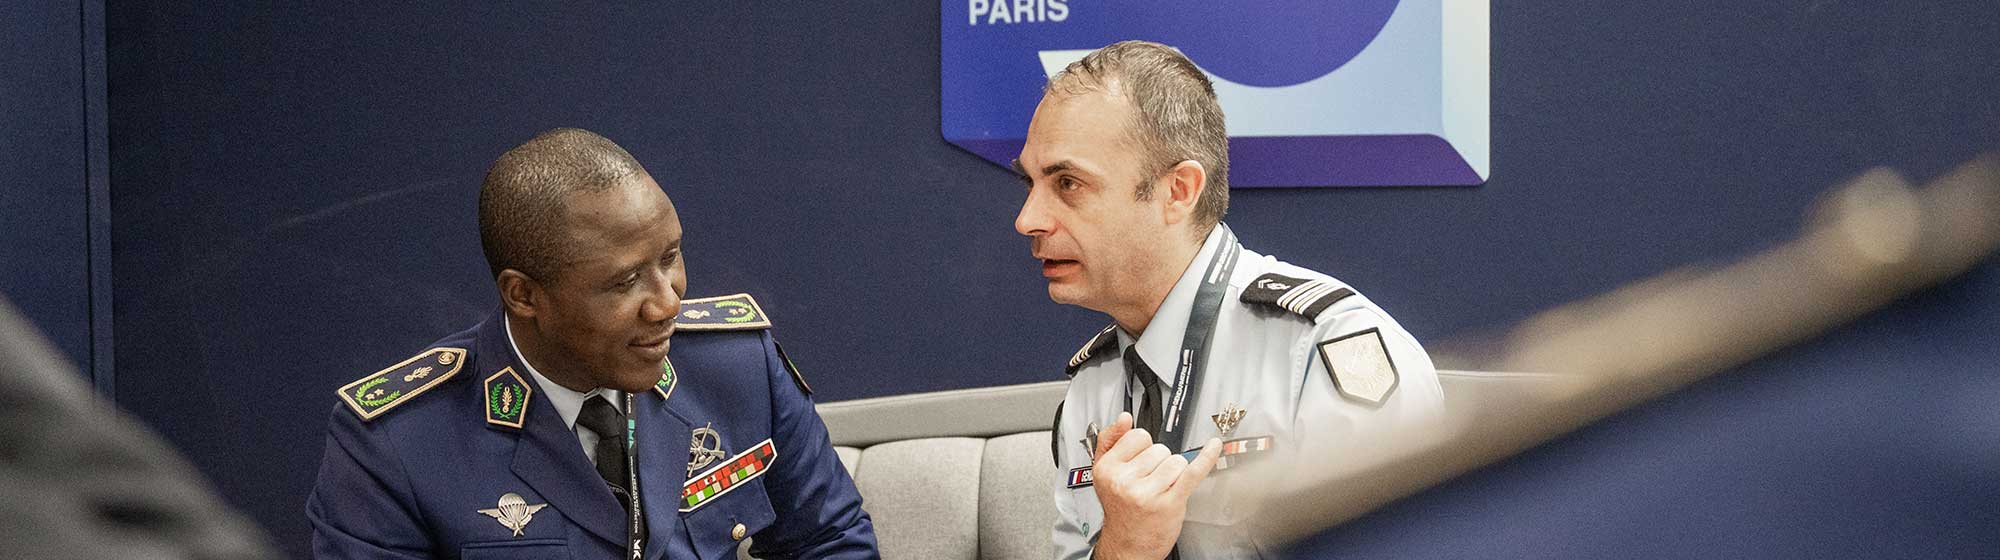 Discussion entre un Officier de la gendarmerie et un Délégué Officiel